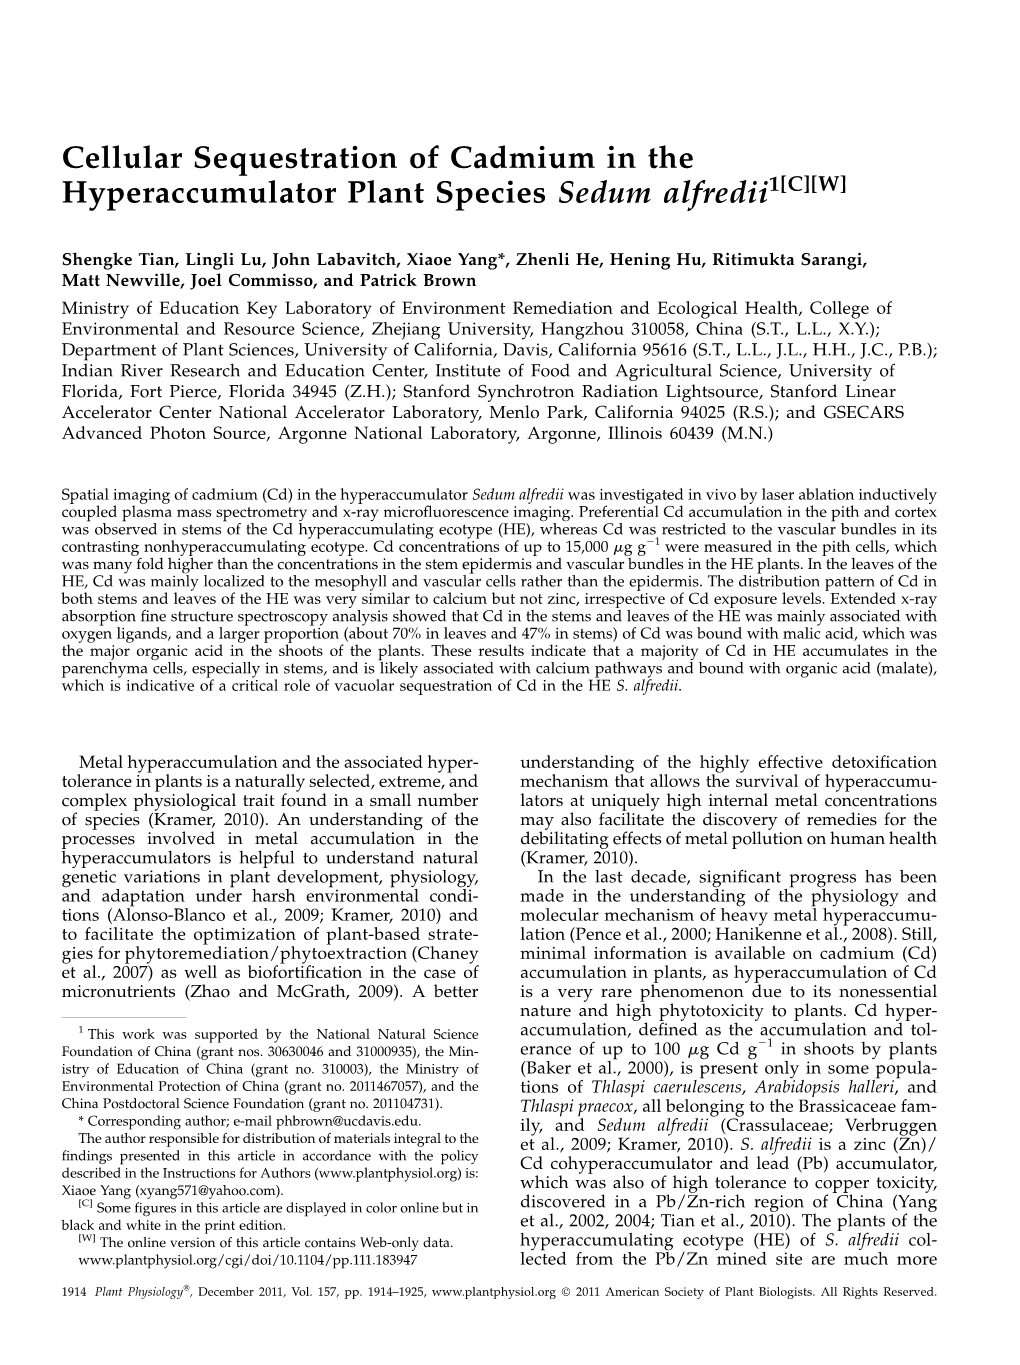 Cellular Sequestration of Cadmium in the Hyperaccumulator Plant Species Sedum Alfredii1[C][W]